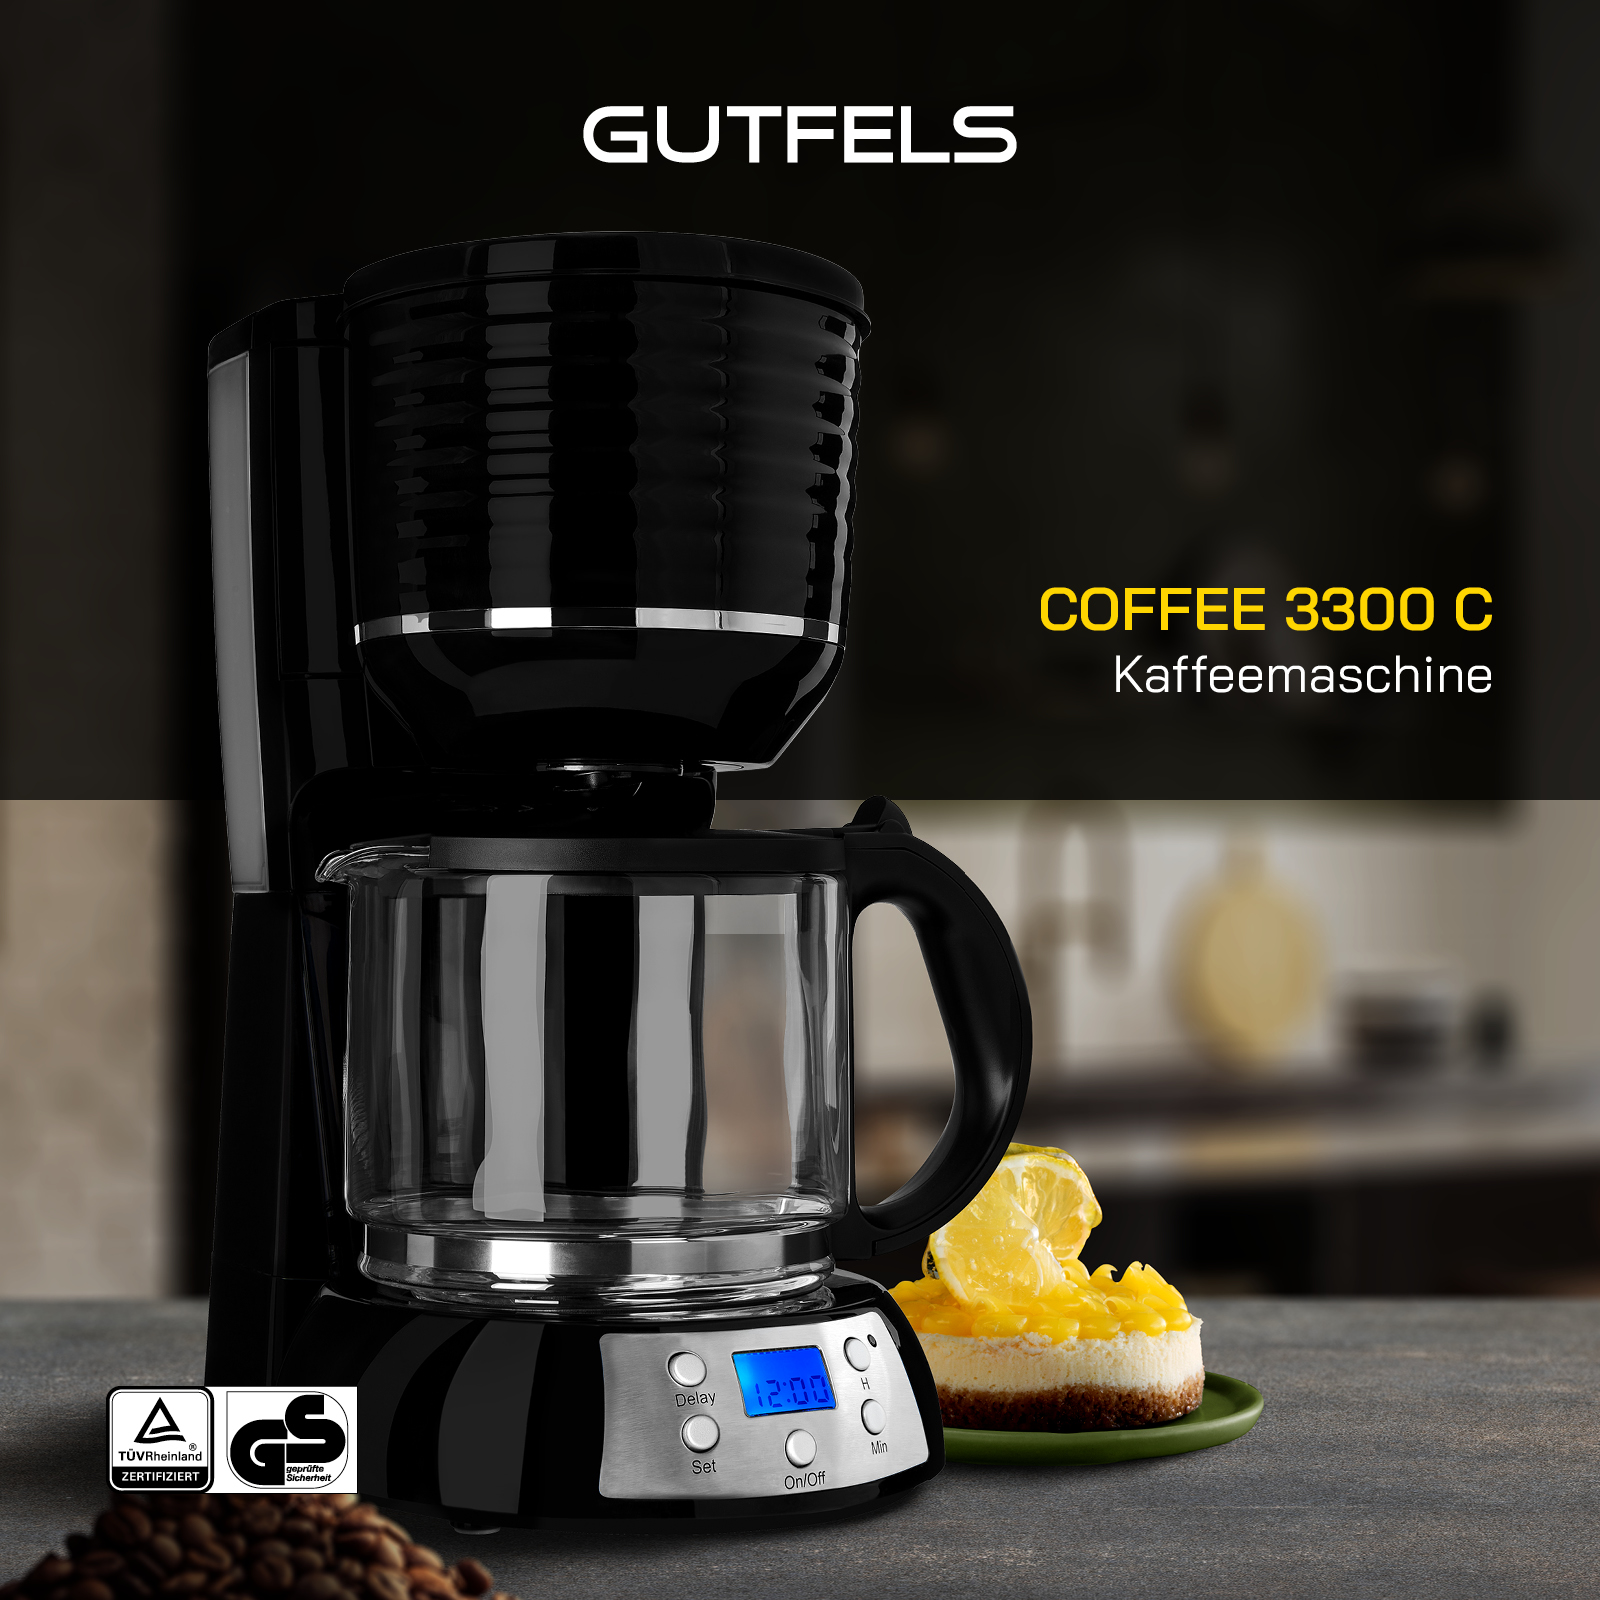 COFFEE GUTFELS 3300 Kaffeemaschine C schwarz